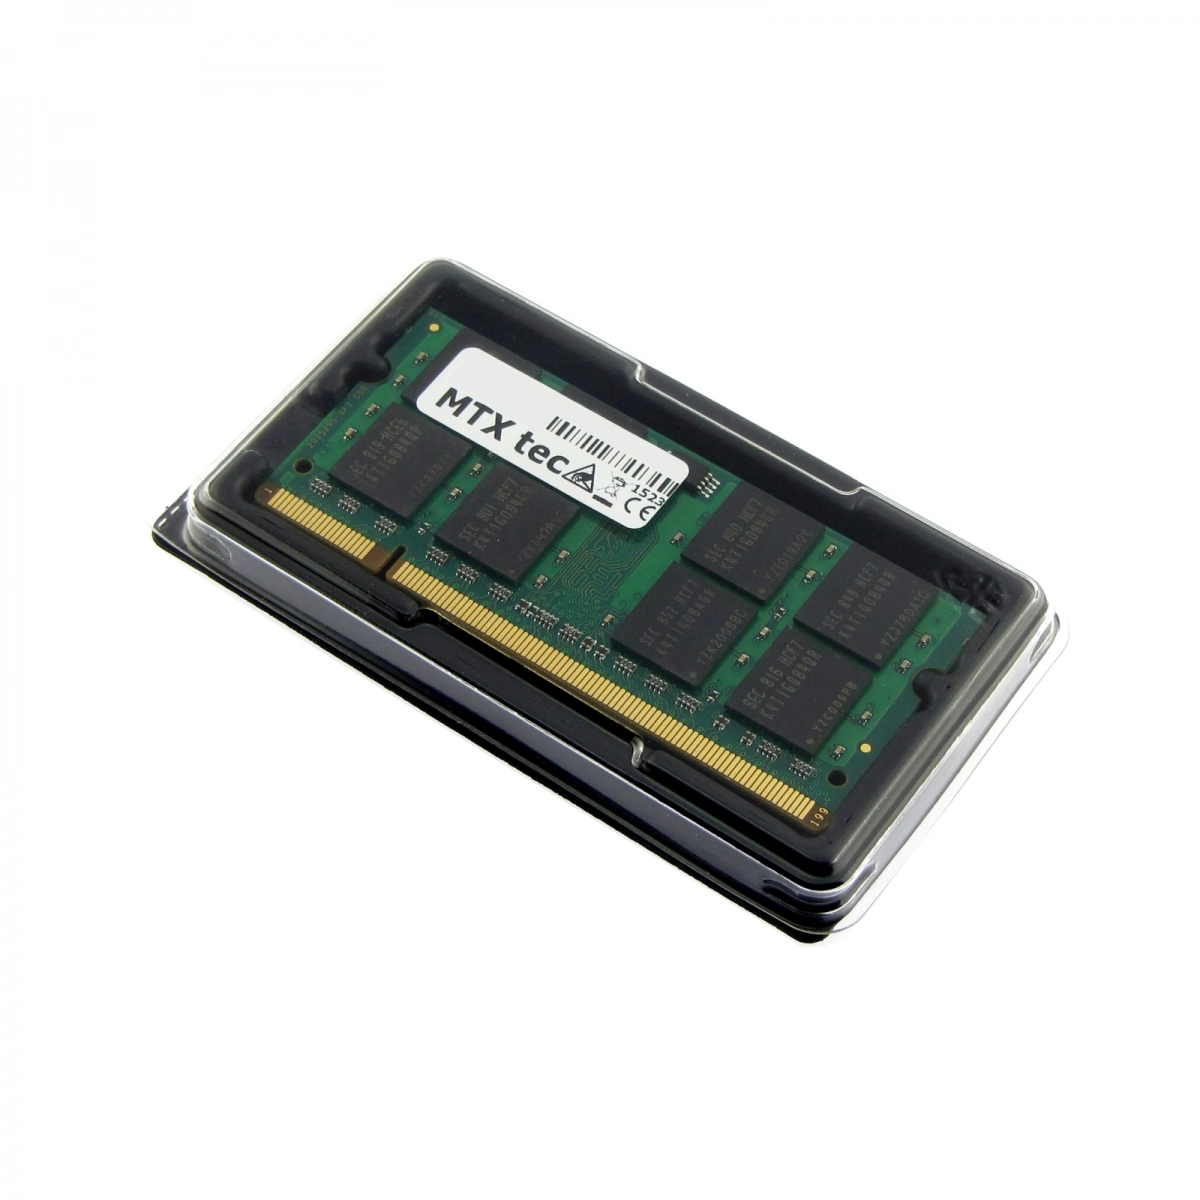 MTXtec Arbeitsspeicher 2 GB RAM für MSI U100